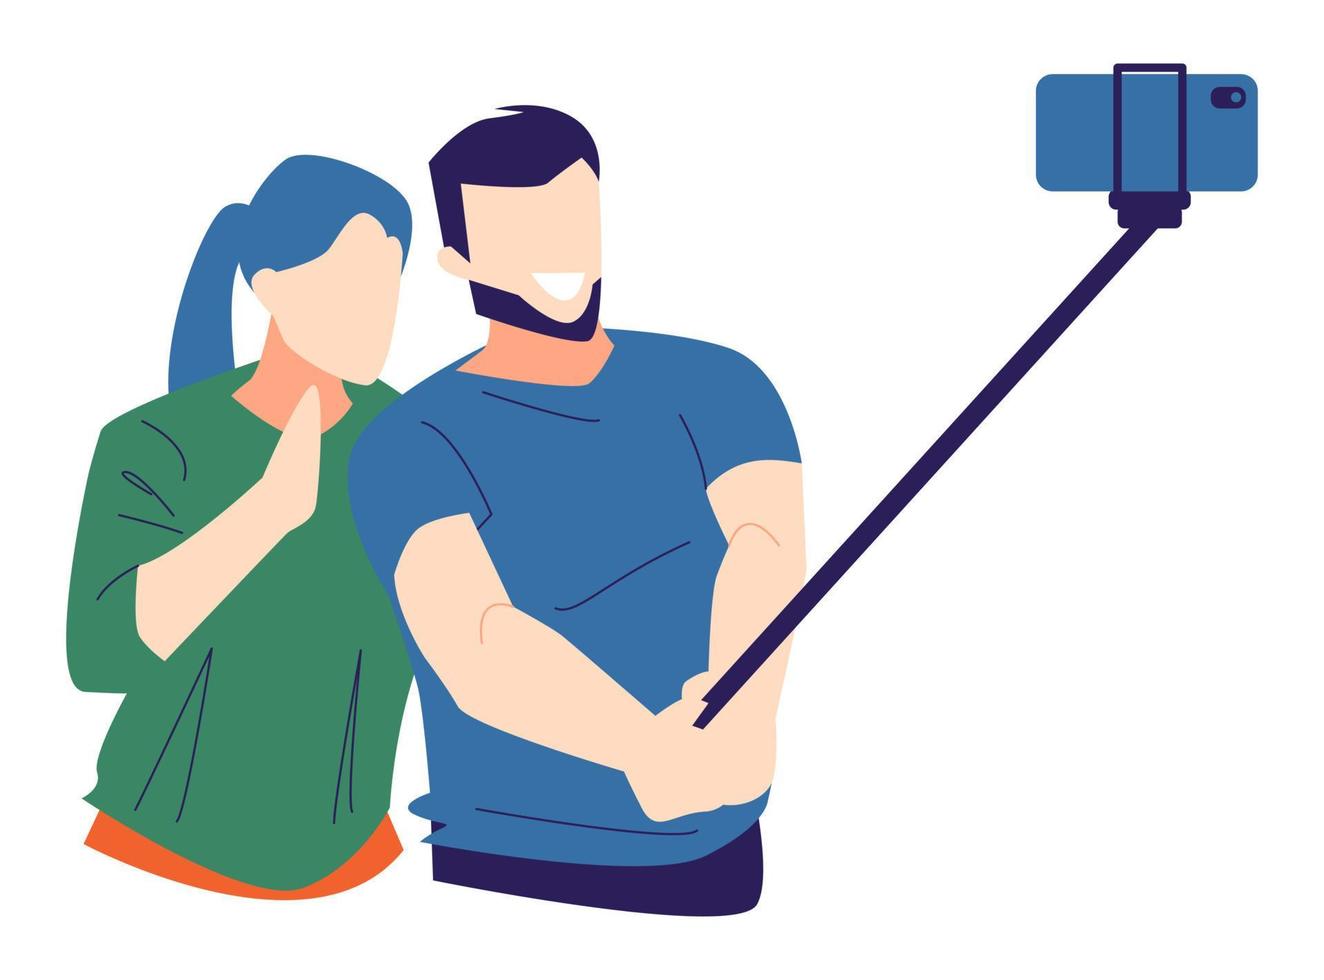 selfie de homem e mulher, usando smartphone e bastão de selfie. Isolado em um fundo branco. adequado para temas de fotografia, hobbies, tecnologia, casais, amor, etc. ilustração vetorial plana vetor